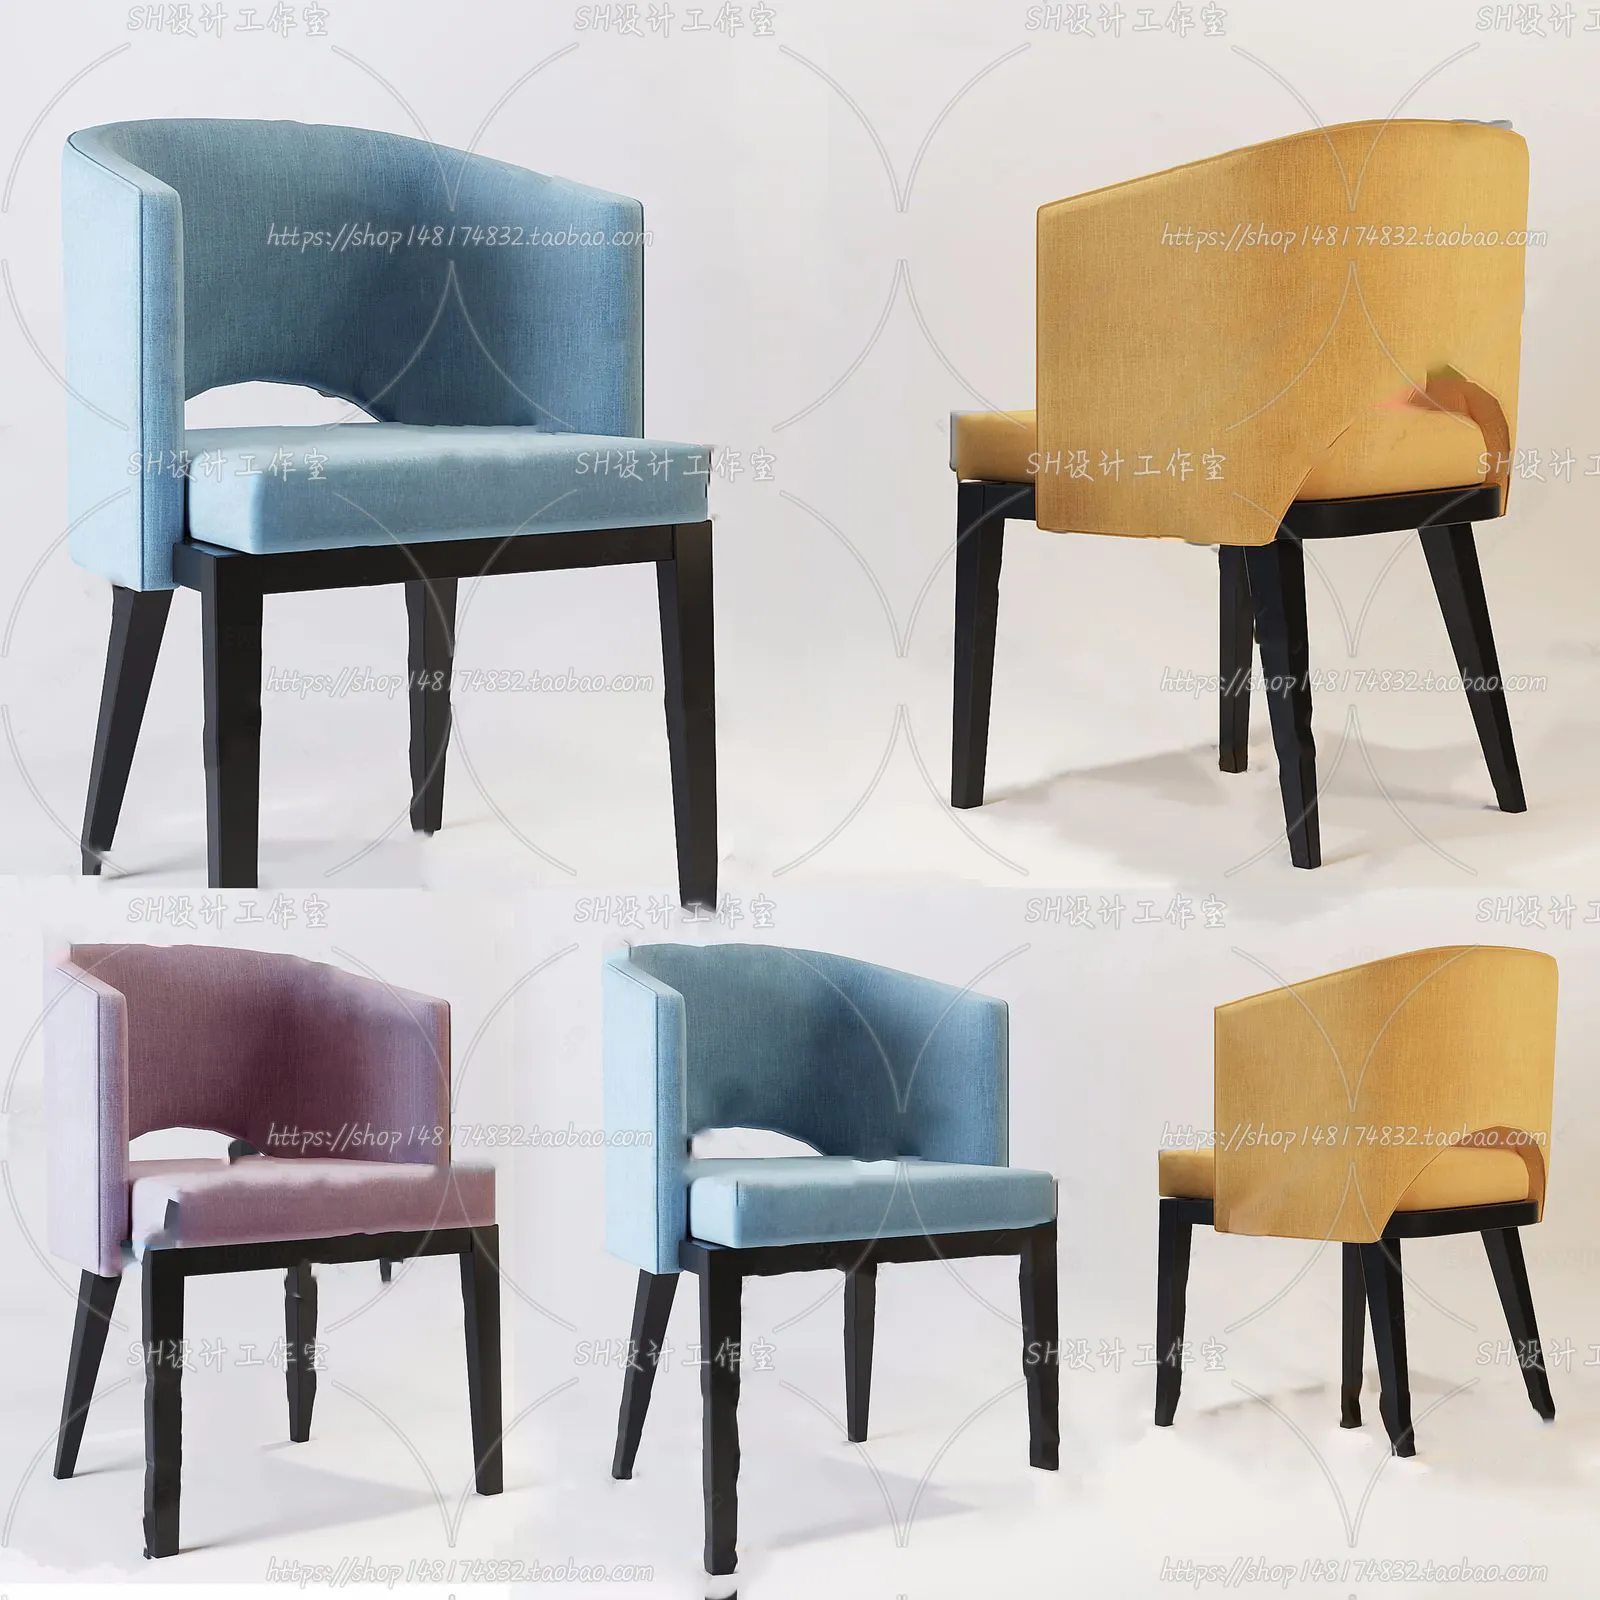 Chair – Single Chair 3D Models – 2001